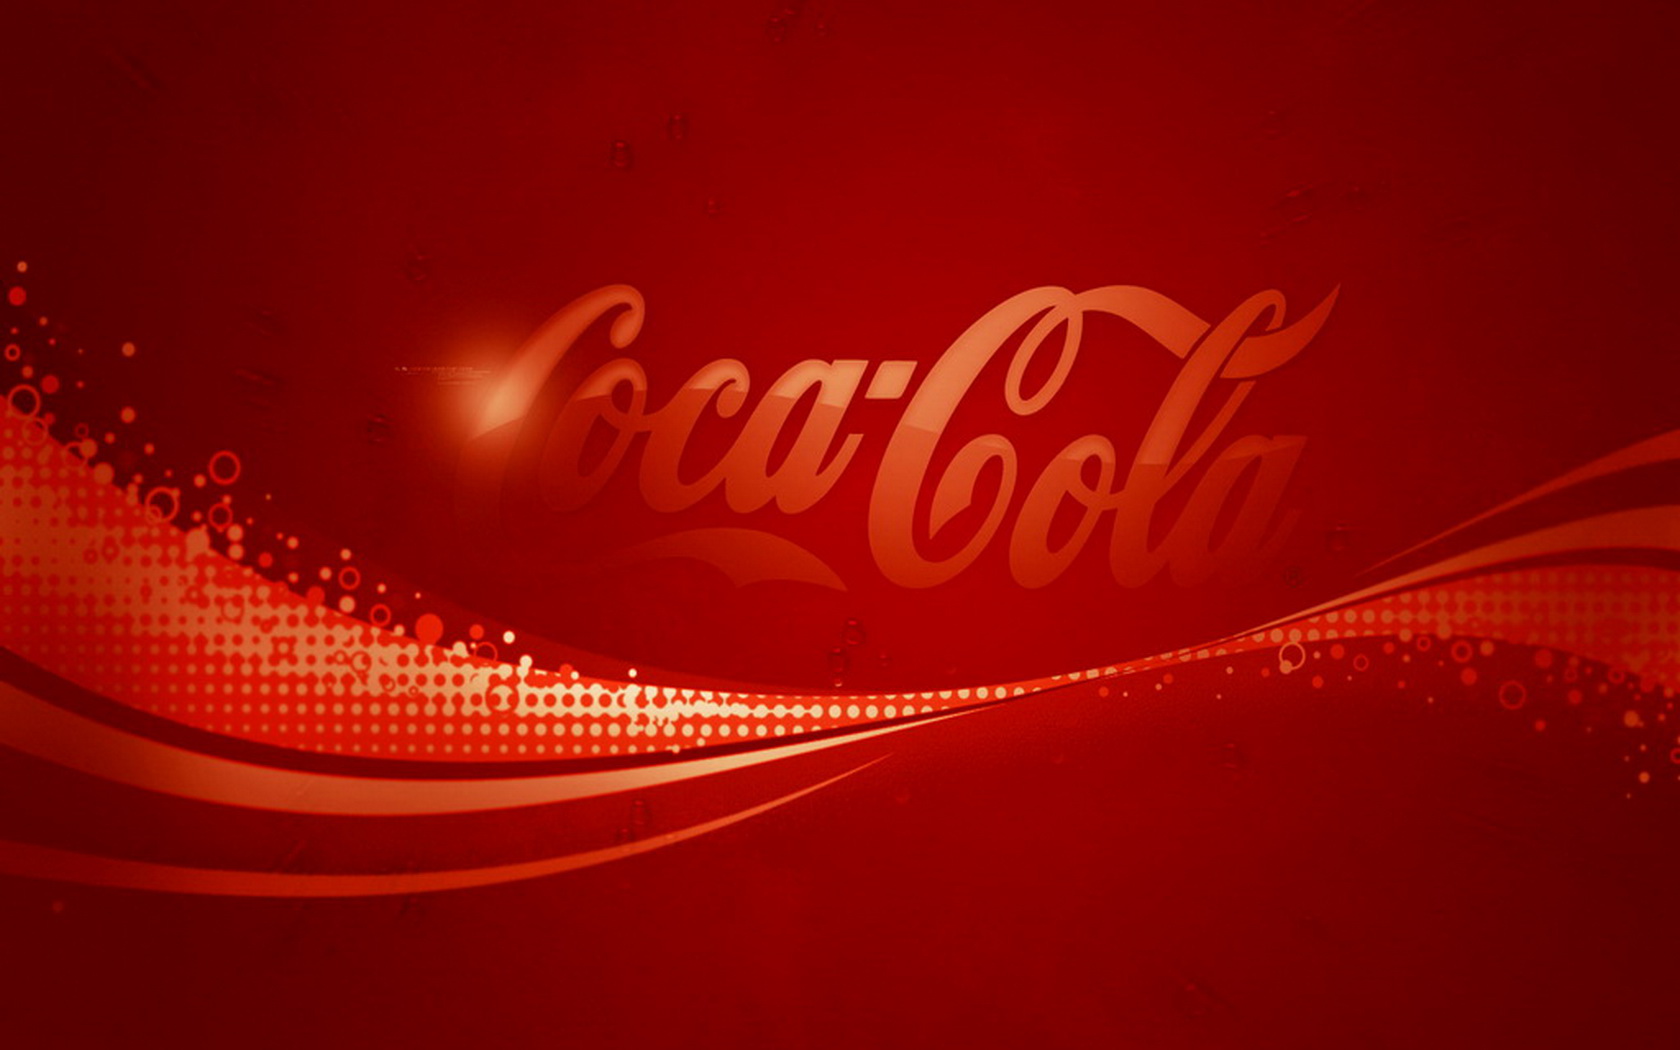 products, coca cola